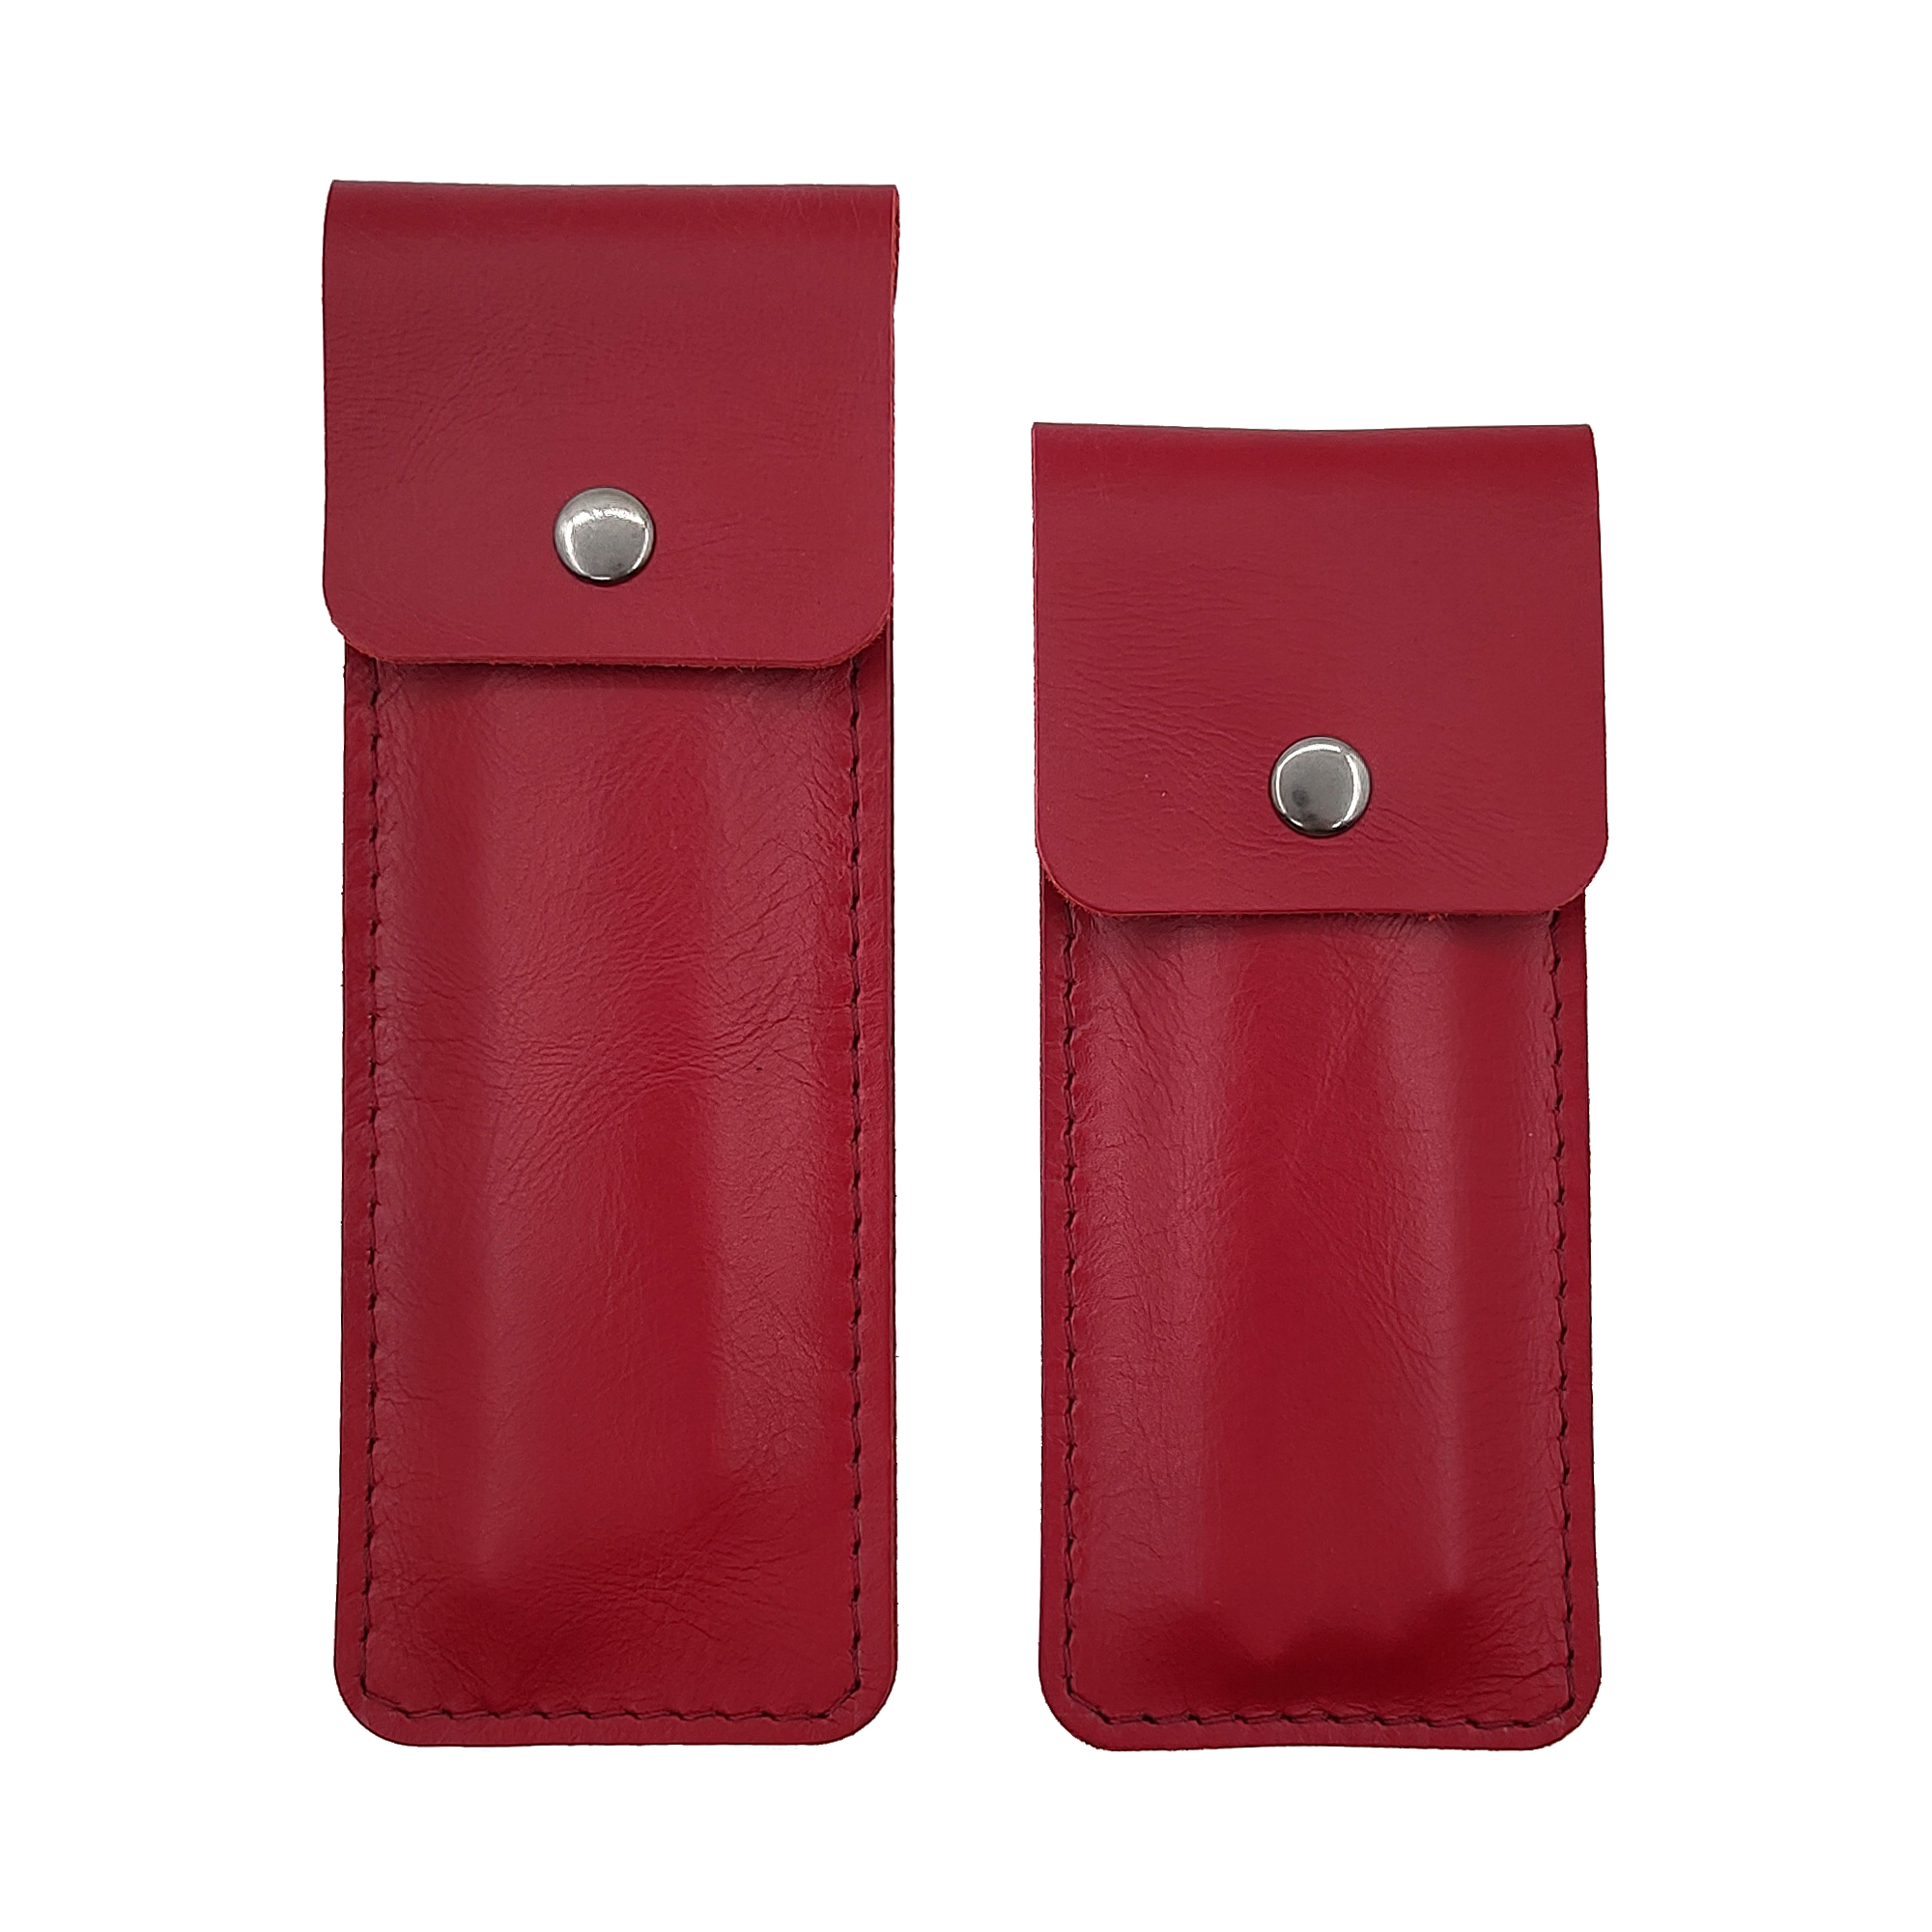 Пенал Shiva Leather из натуральной кожи MBN-PENAL-RD Красные 2 шт